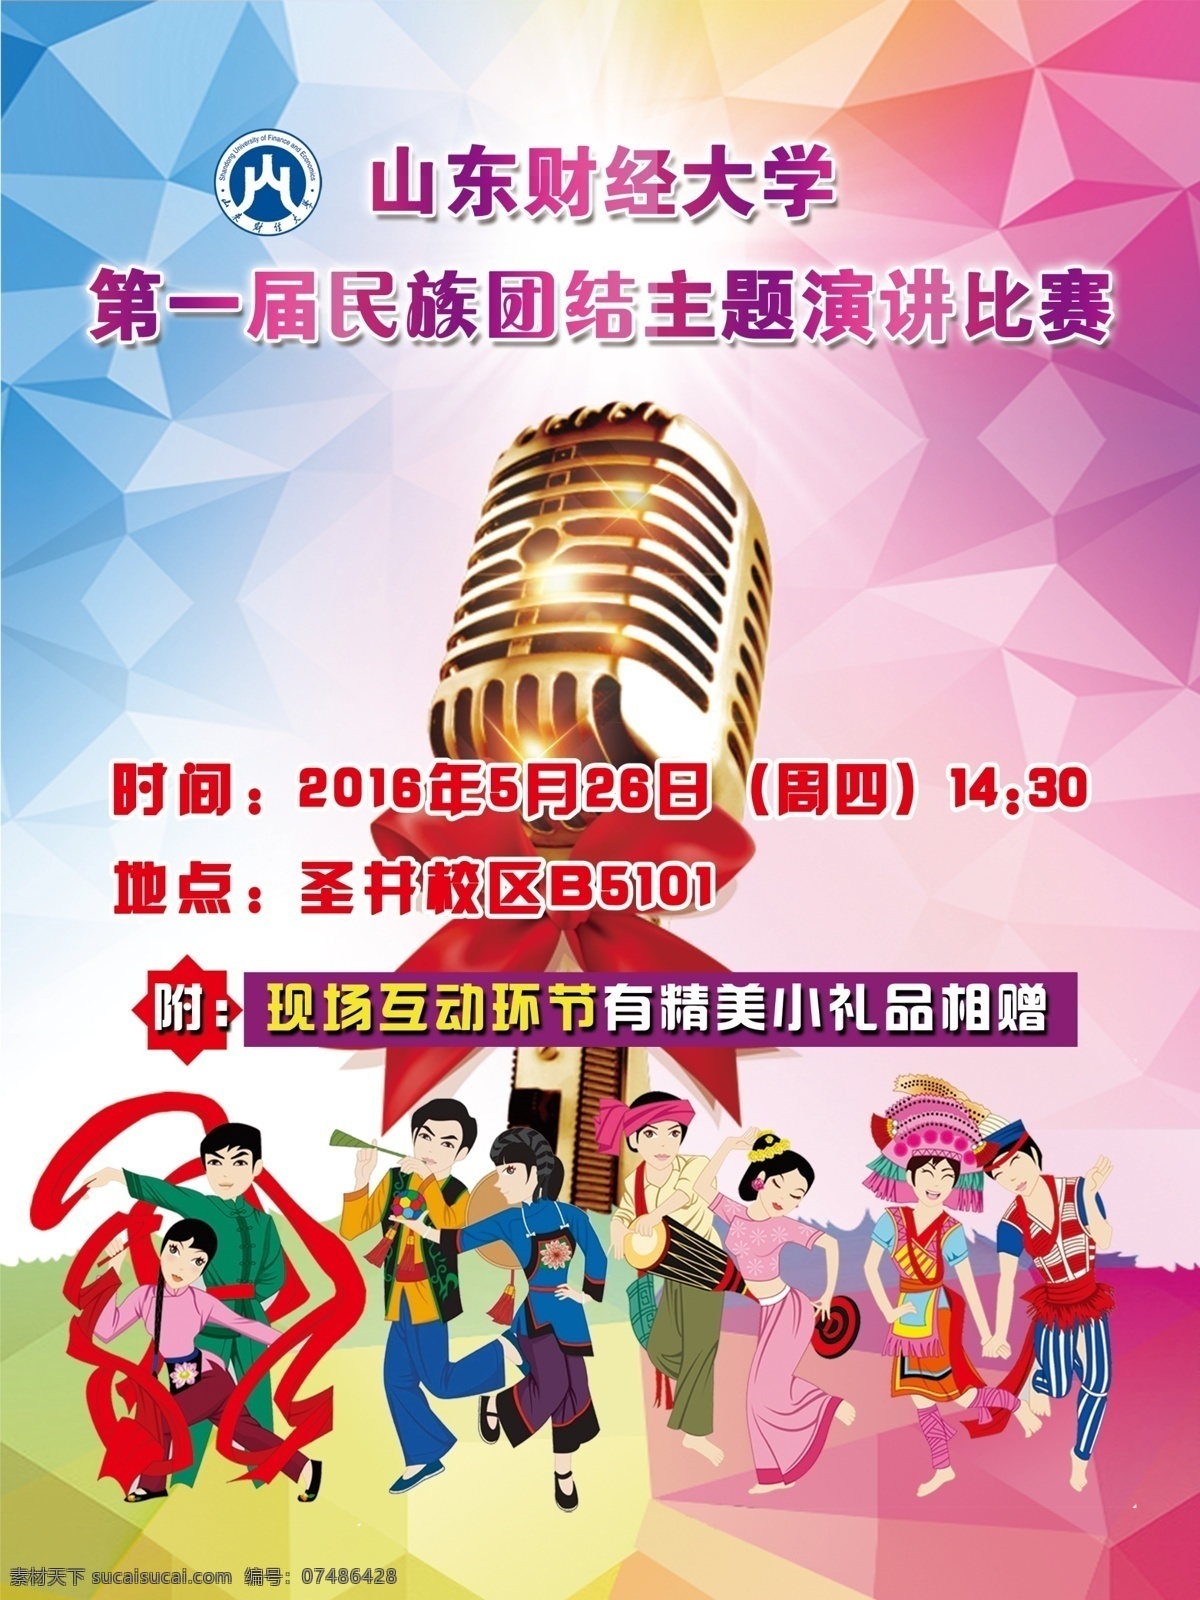 第一届 民族 团结 主题 演讲 比赛 炫彩 演讲比赛 海报 麦克风 音乐